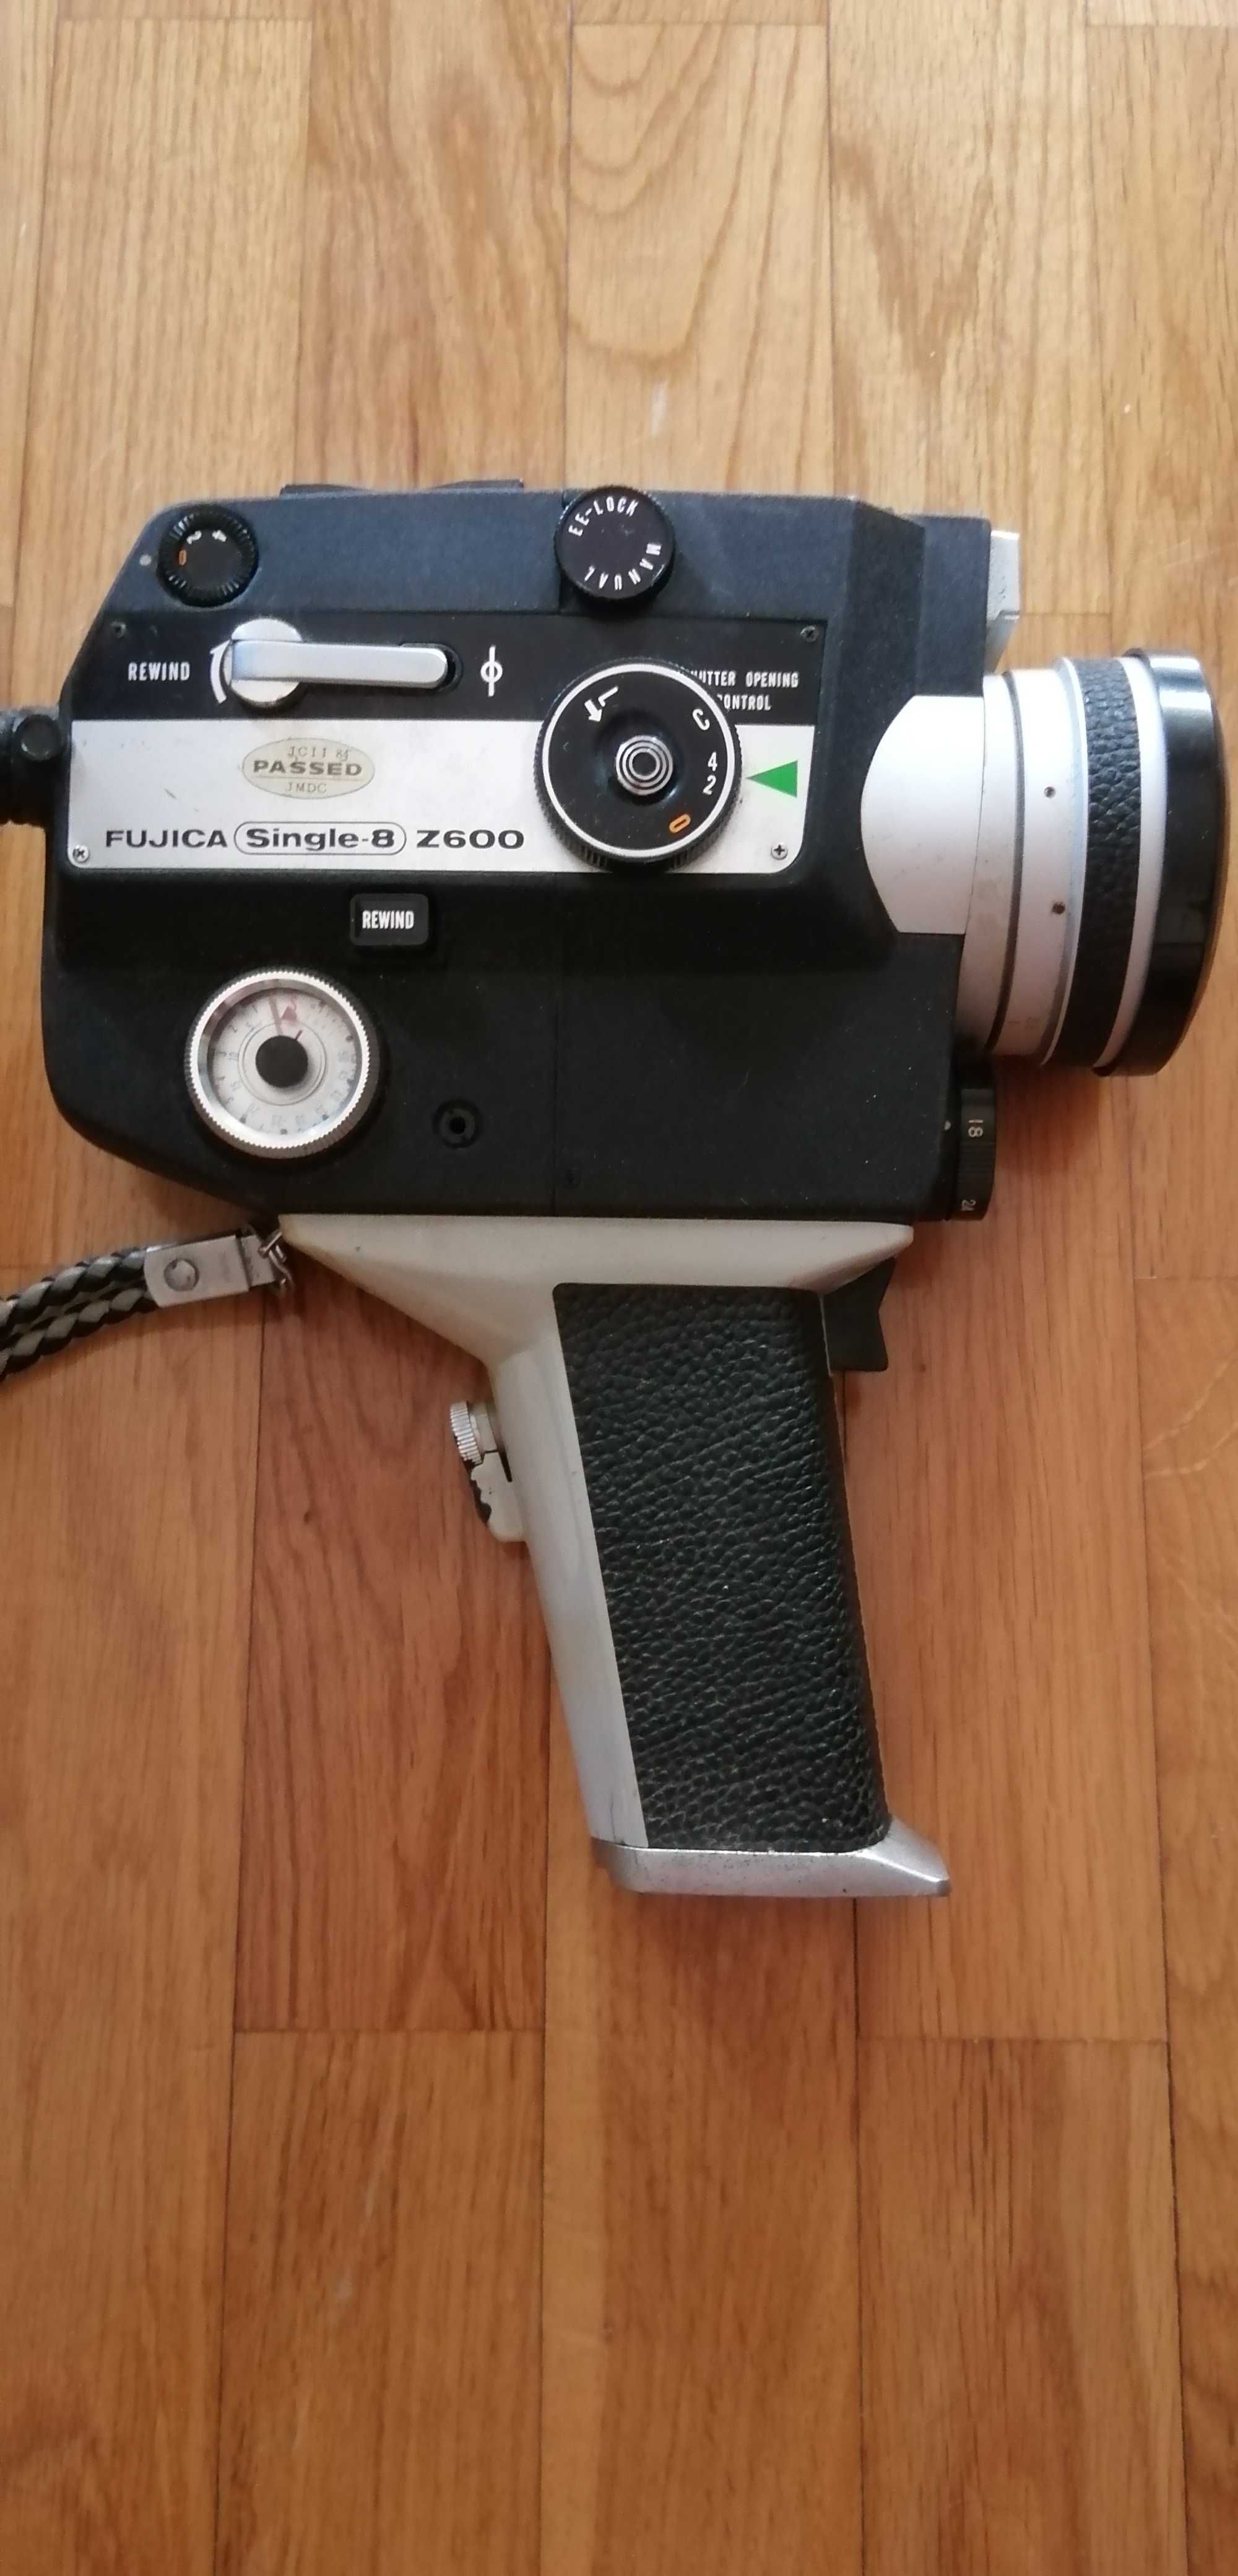 Camara de filmar fujica single 8 z600 para desocupar